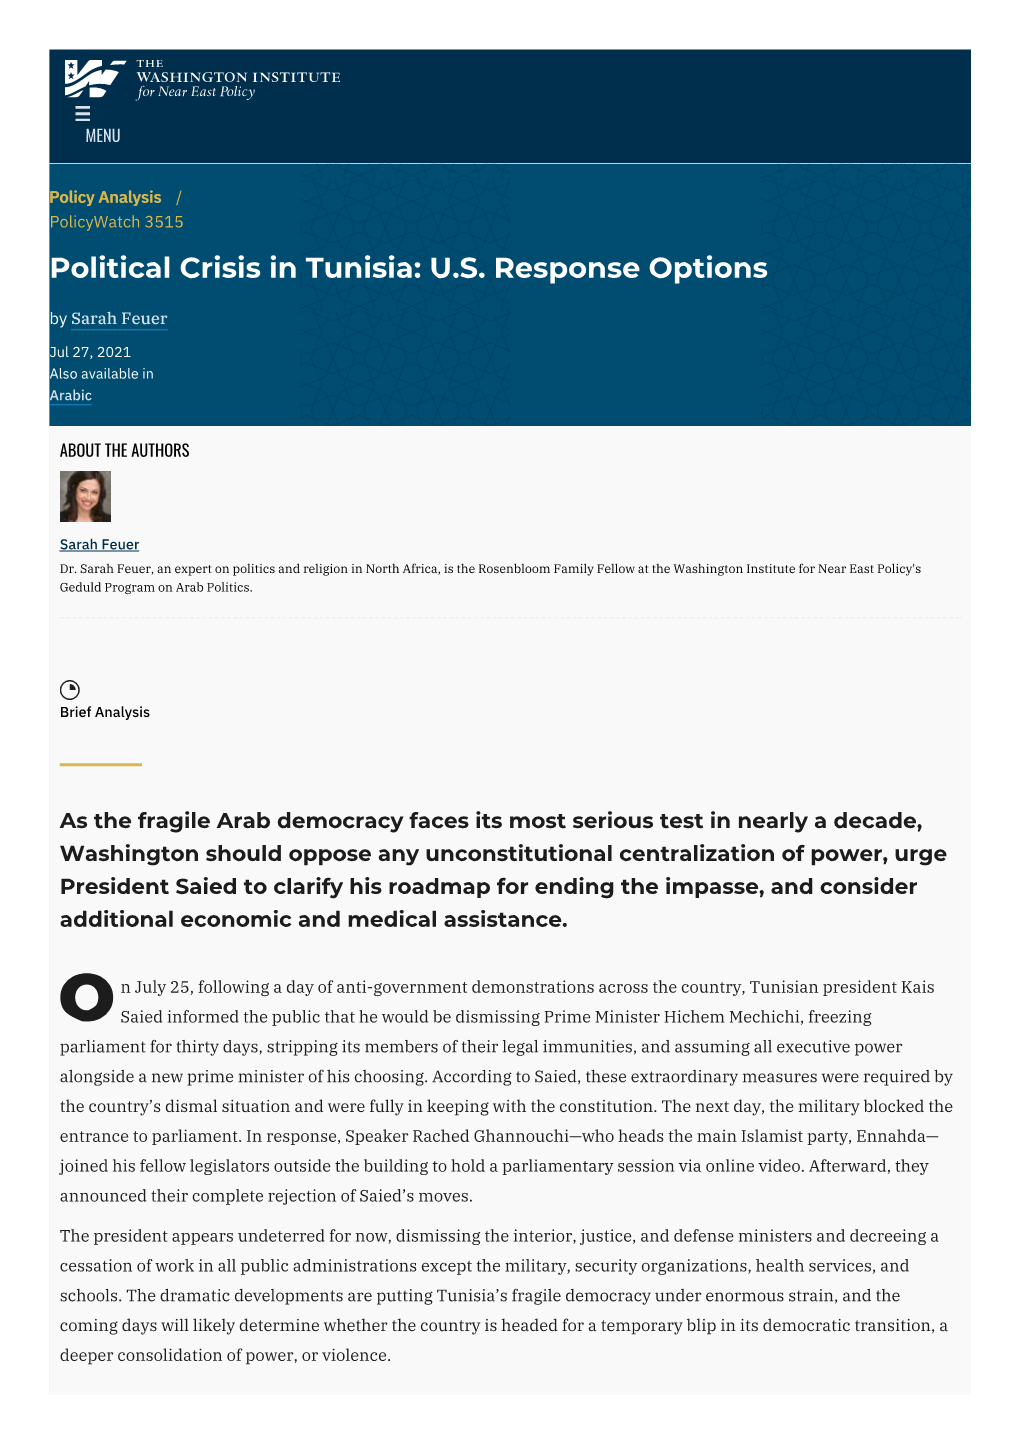 Political Crisis in Tunisia: U.S